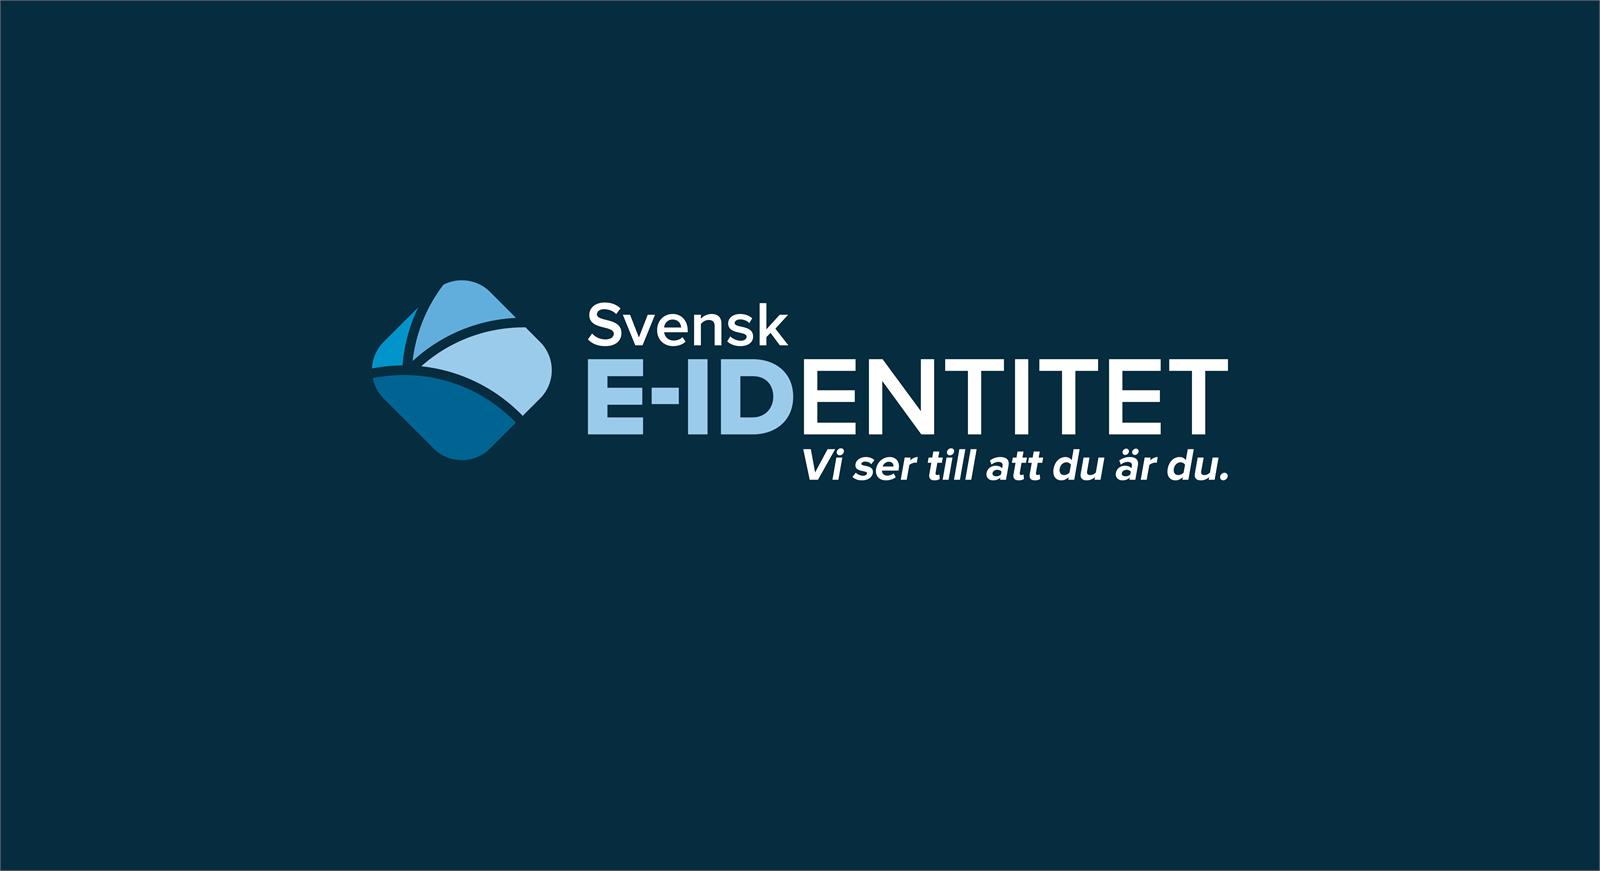 Svensk e-identitet